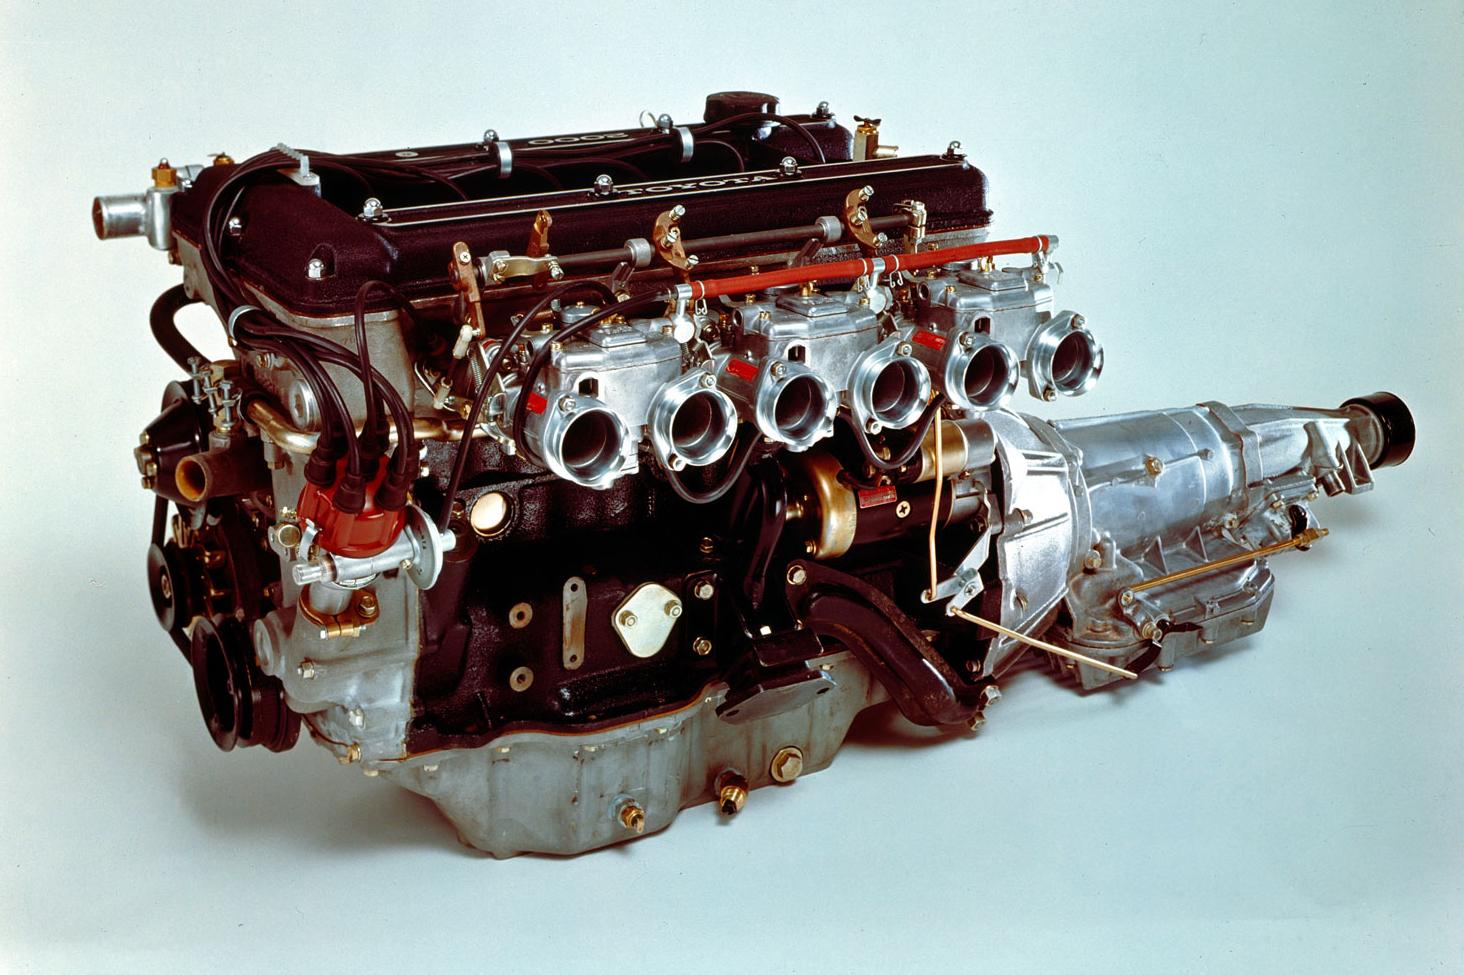 Gazoo クルマクイズ Q 30 1967年に発売された 2リッター直列6気筒dohcエンジンを搭載する日本の高性能スポーツカーは クルマクイズ トヨタ自動車のクルマ情報サイト Gazoo